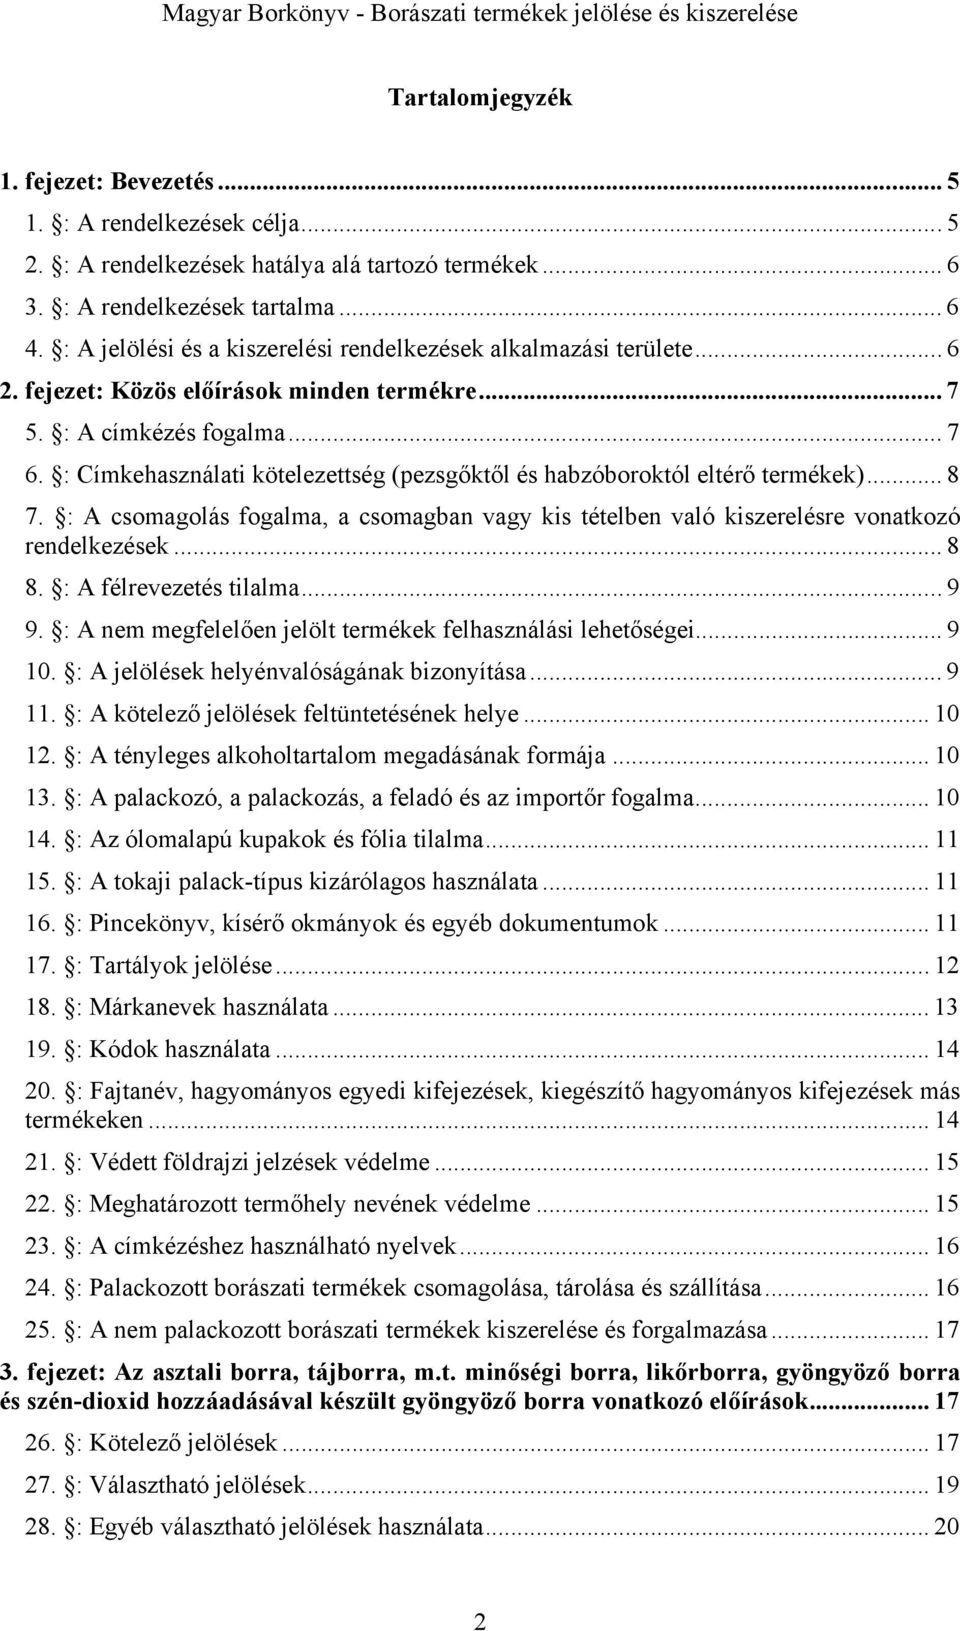 Magyar Borkönyv - Borászati termékek jelölése és kiszerelése. A Magyar  Borkönyv előírásai (borászati termékek jelölése és kiszerelése) - PDF Free  Download